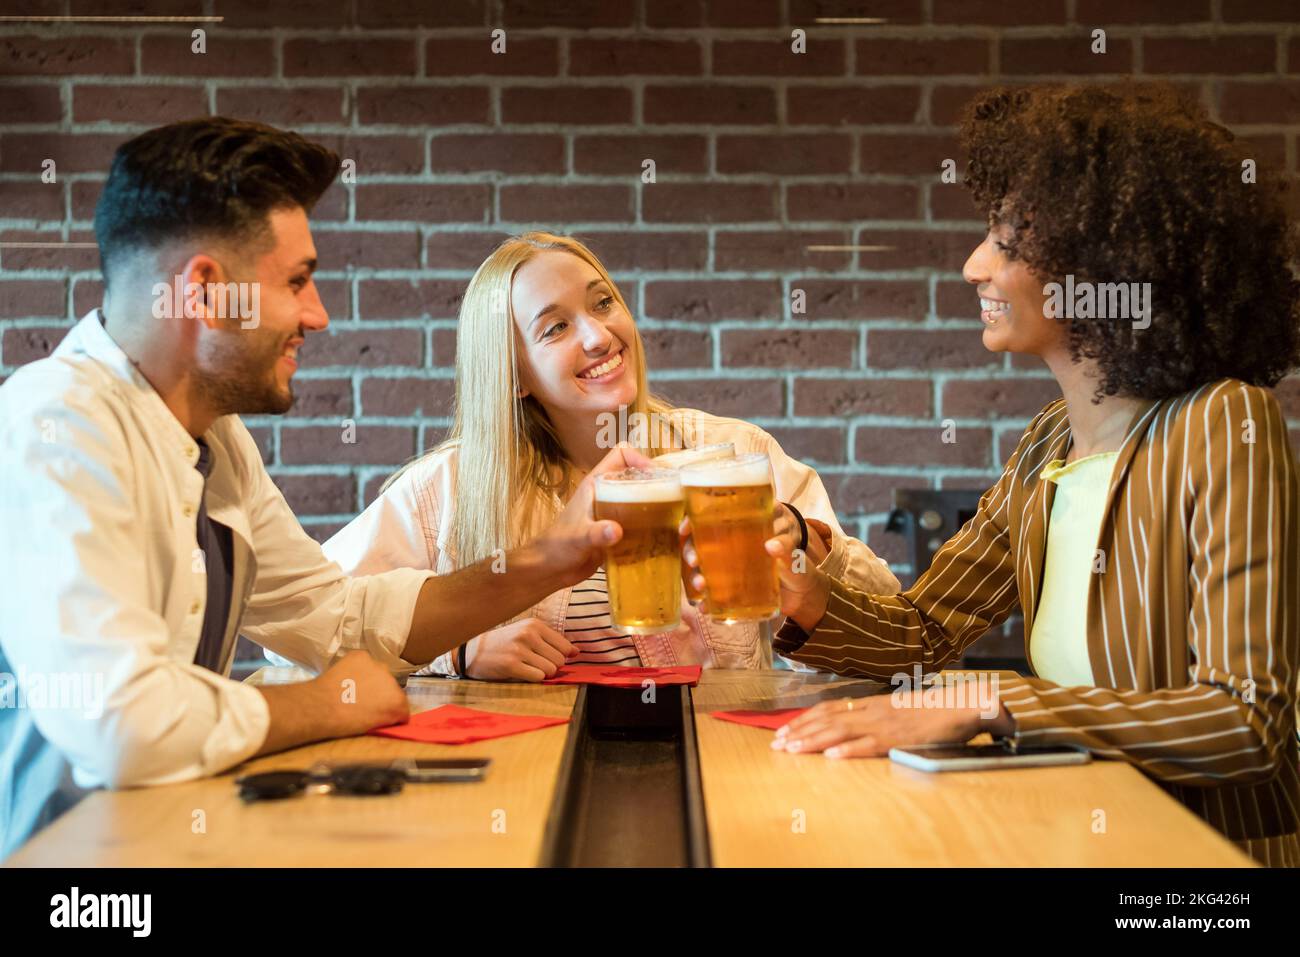 Sorridente allegria multirazziale con bicchieri di birra schiumosa fredda mentre si siede al tavolo nel pub vicino al muro di mattoni Foto Stock